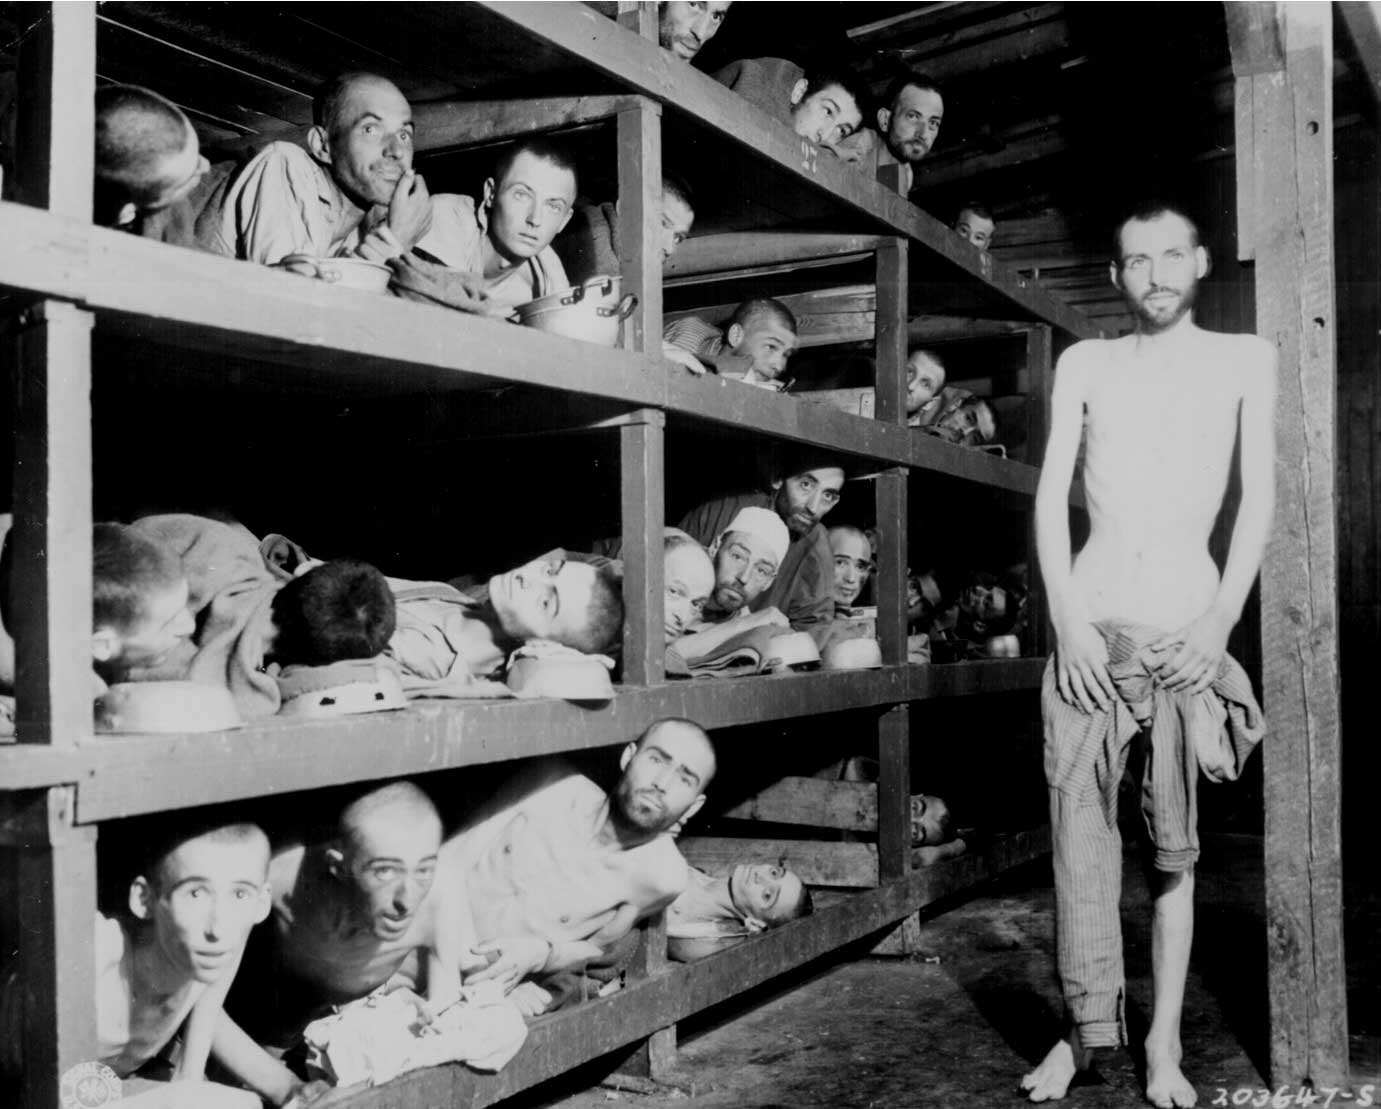 Concentration Camp survivors